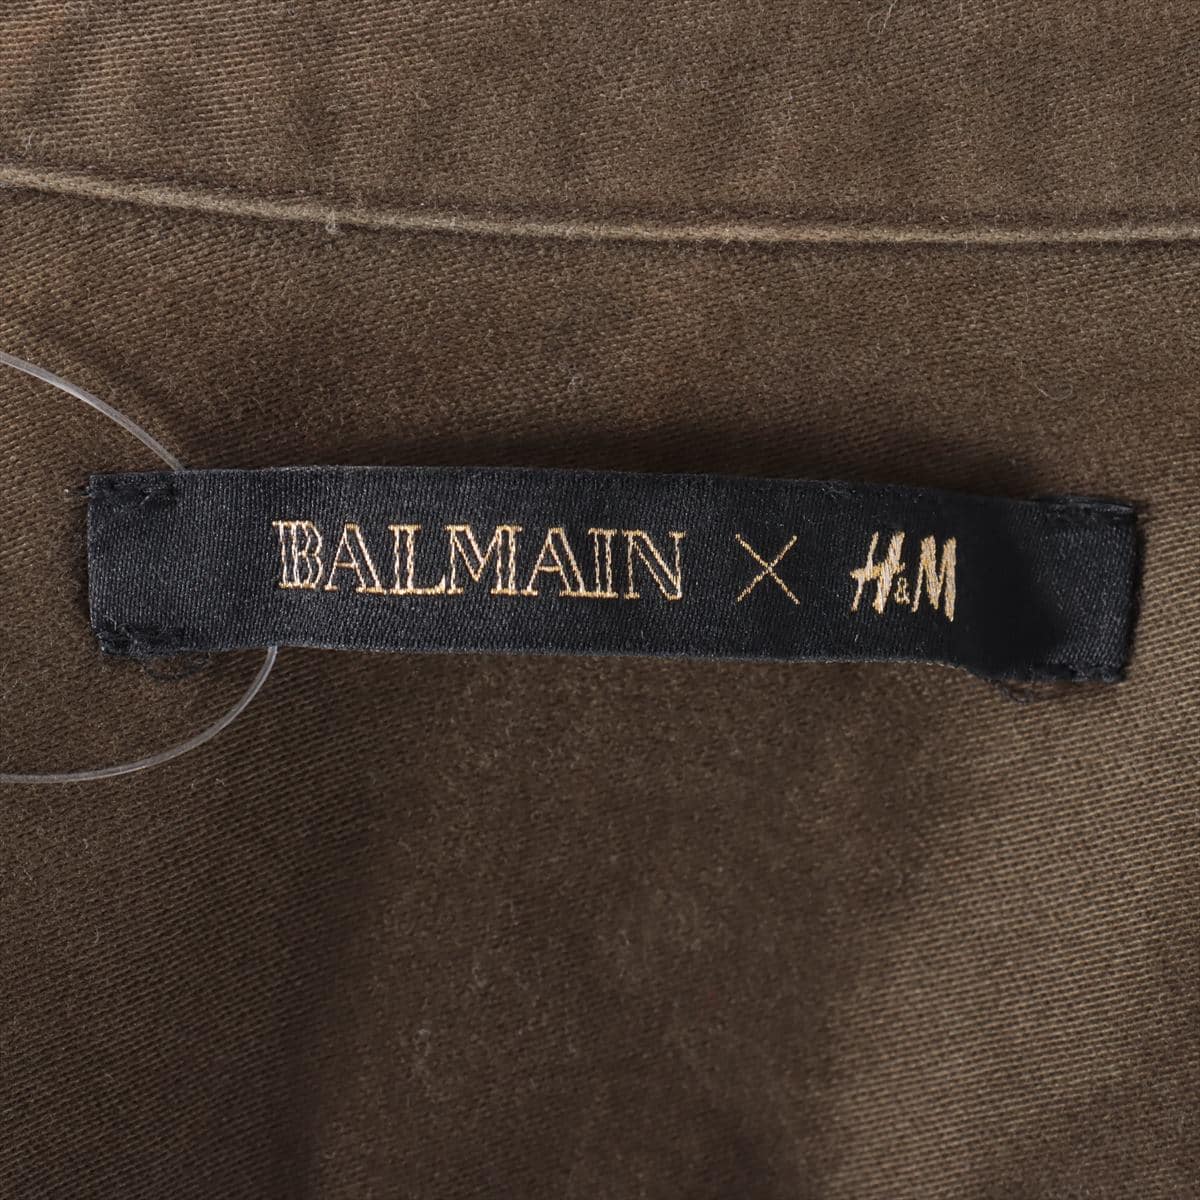 Balmain x H&M Cotton Shirt M Men's Khaki